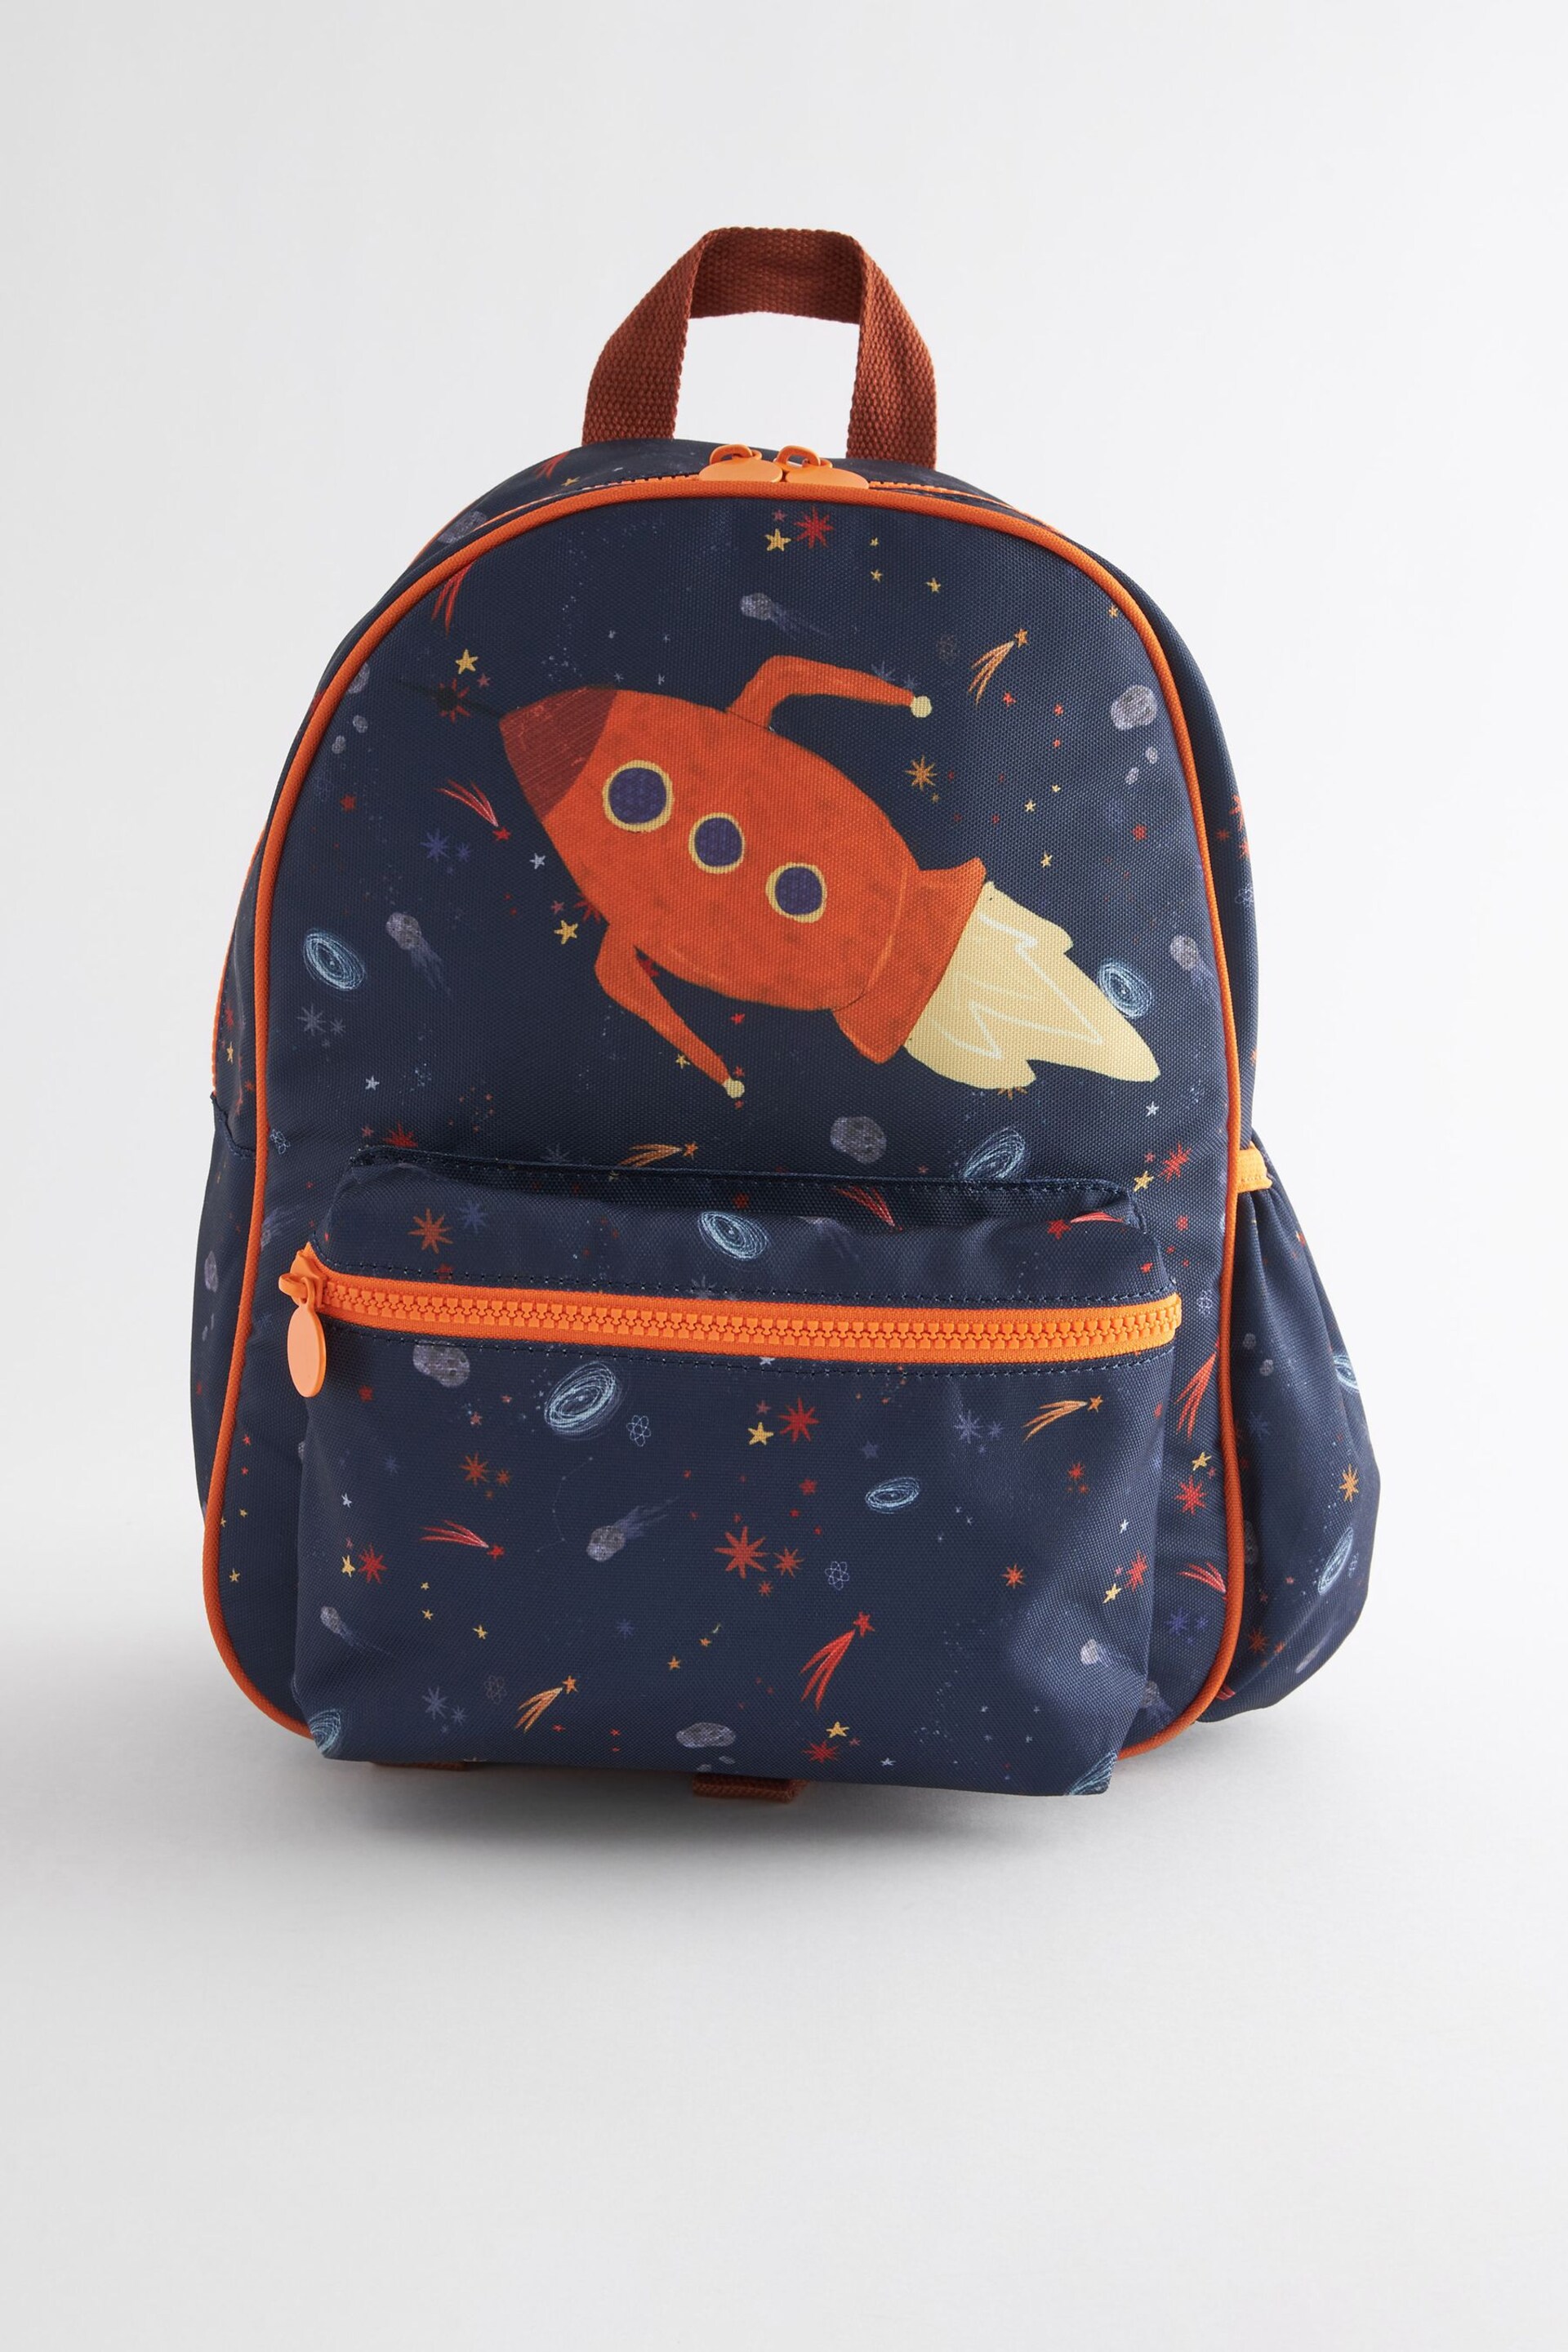 Blue Rocket Backpack - Image 1 of 4